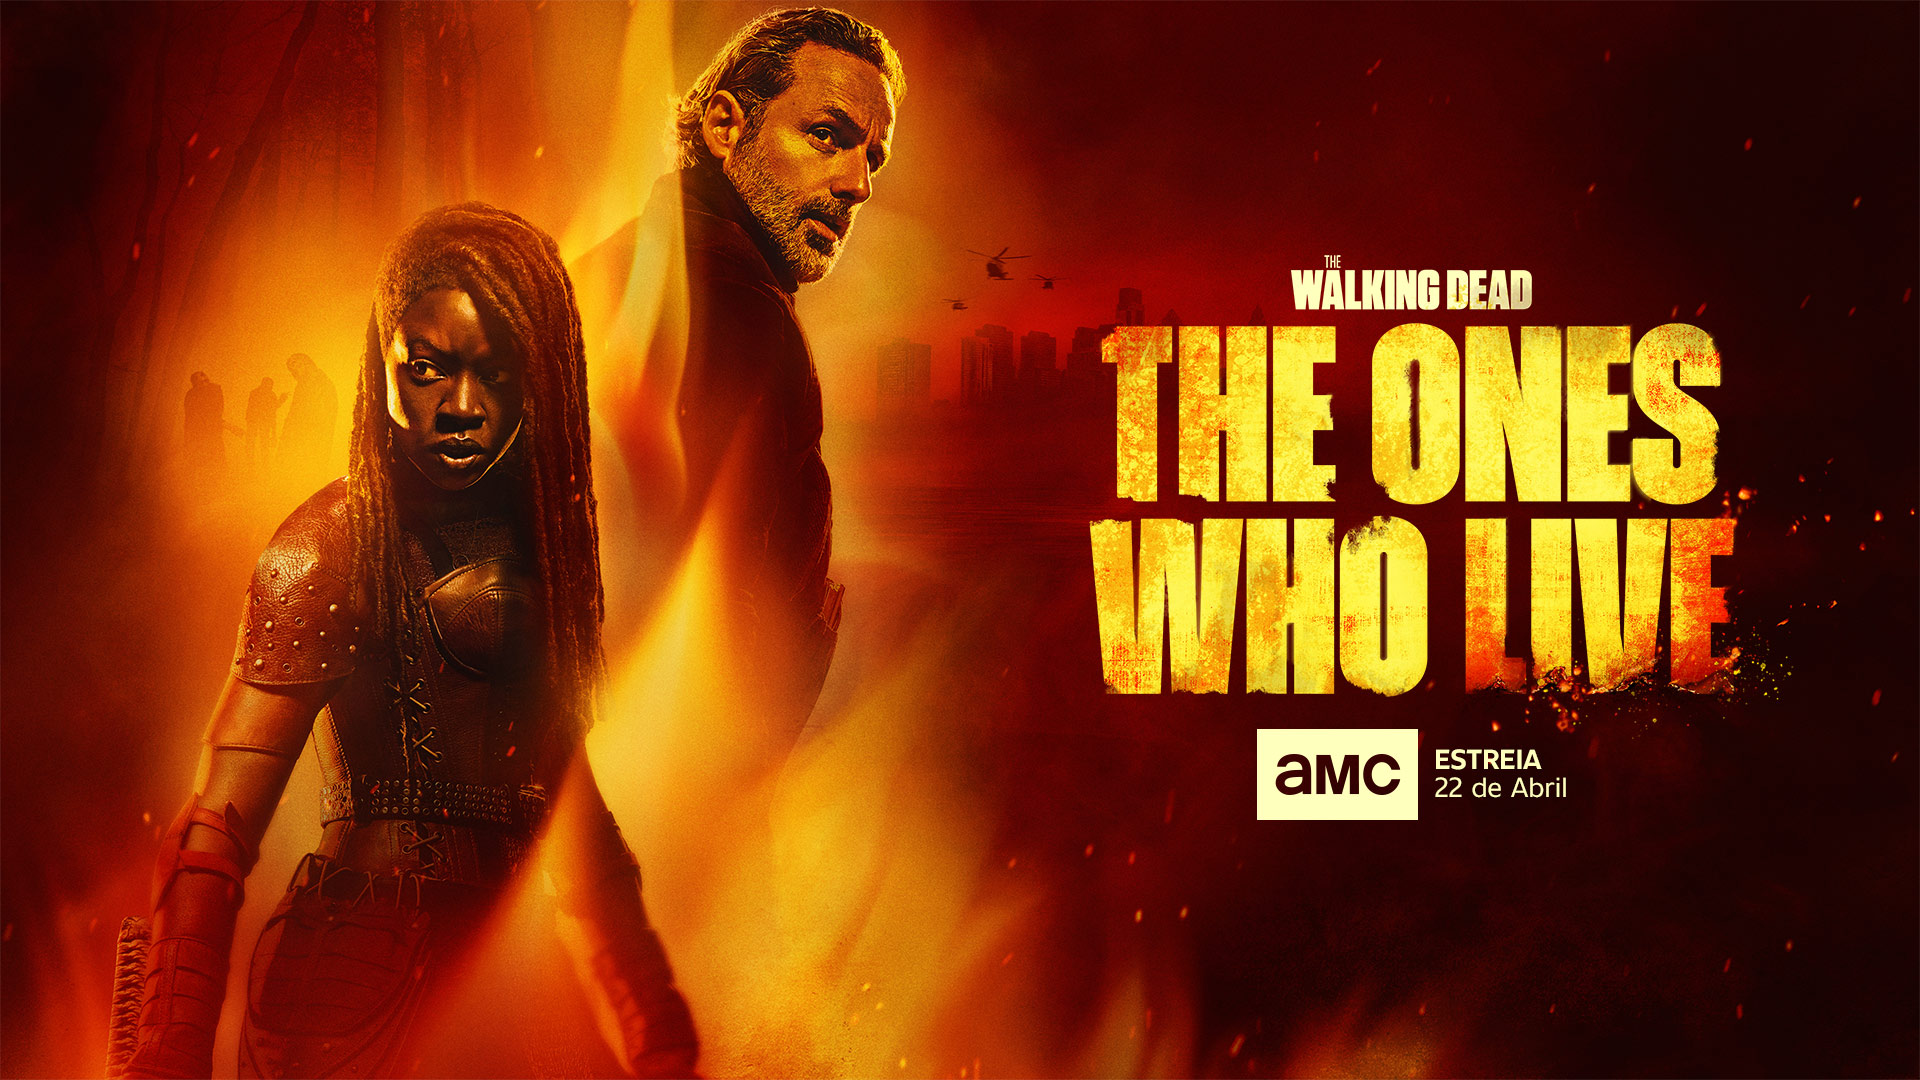 Pronto llegará la secuela de “The Walking Dead” por el canal AMC